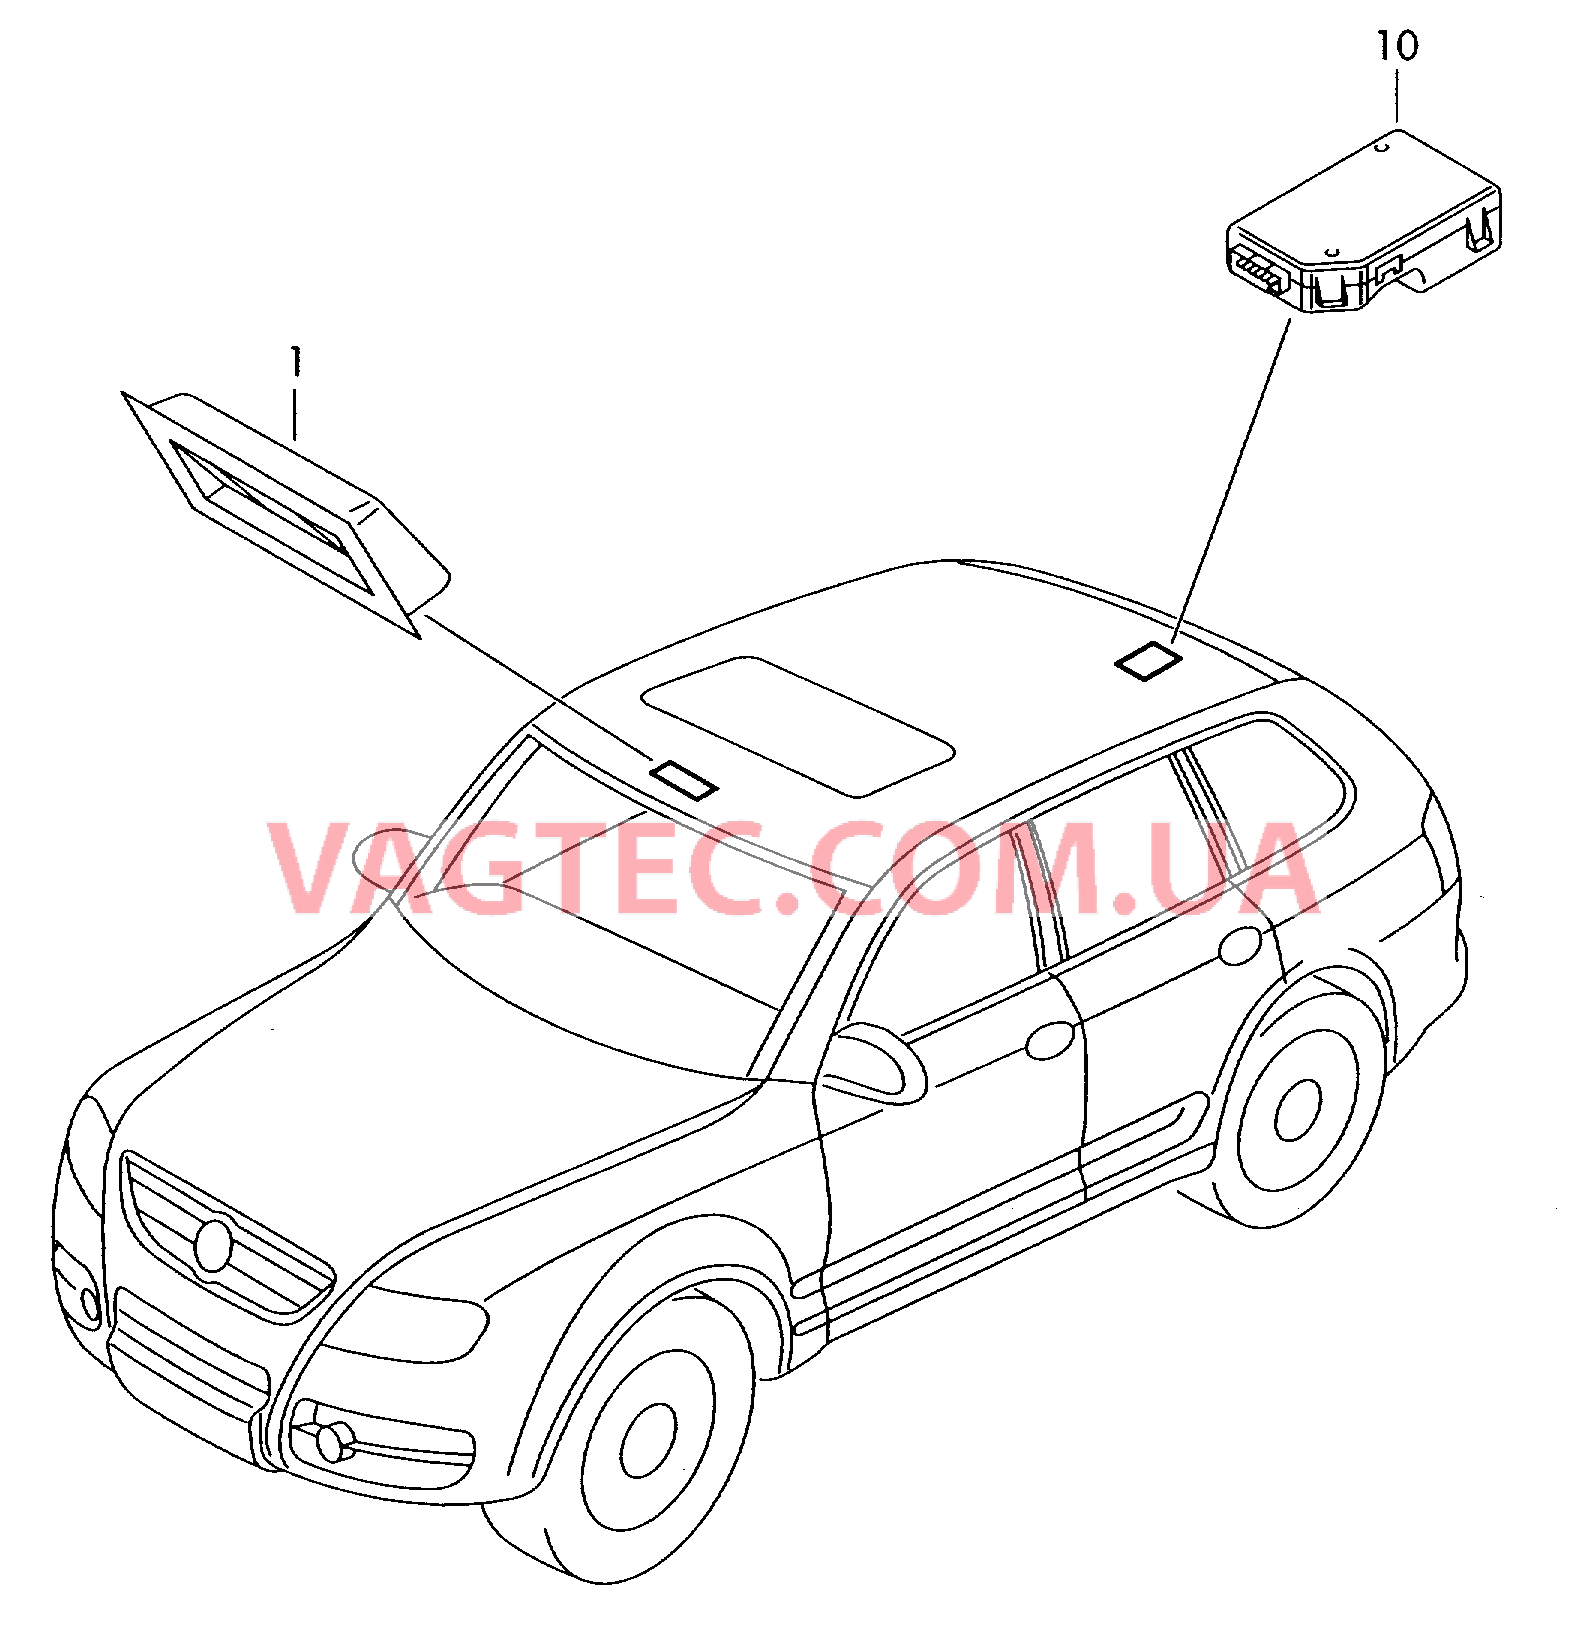 Панель управления и индикации для автомобилей с системой KOMPASS  для VOLKSWAGEN Touareg 2007-1